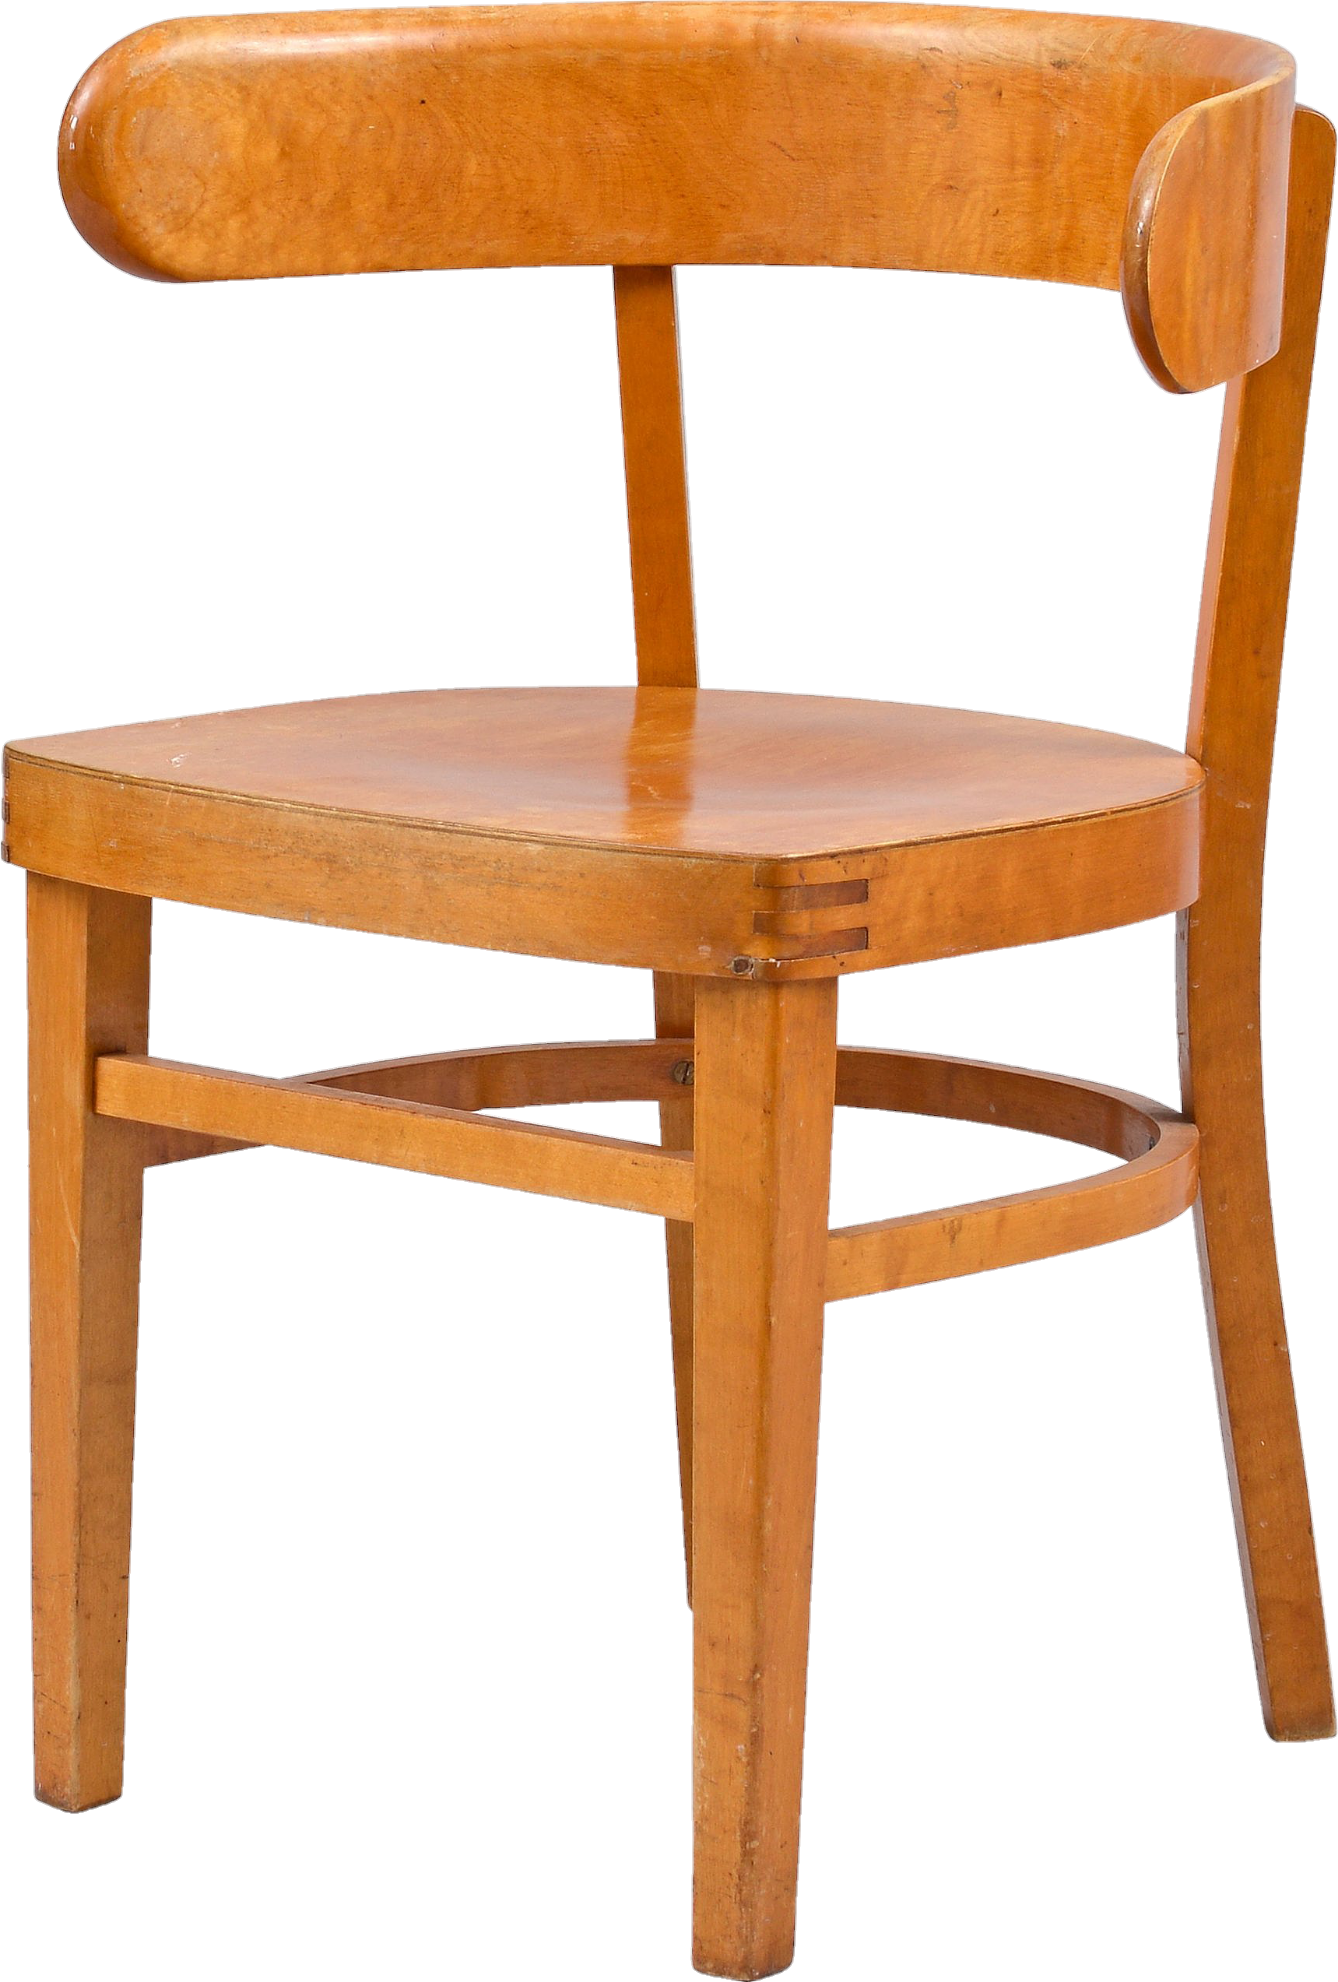 Chair-17